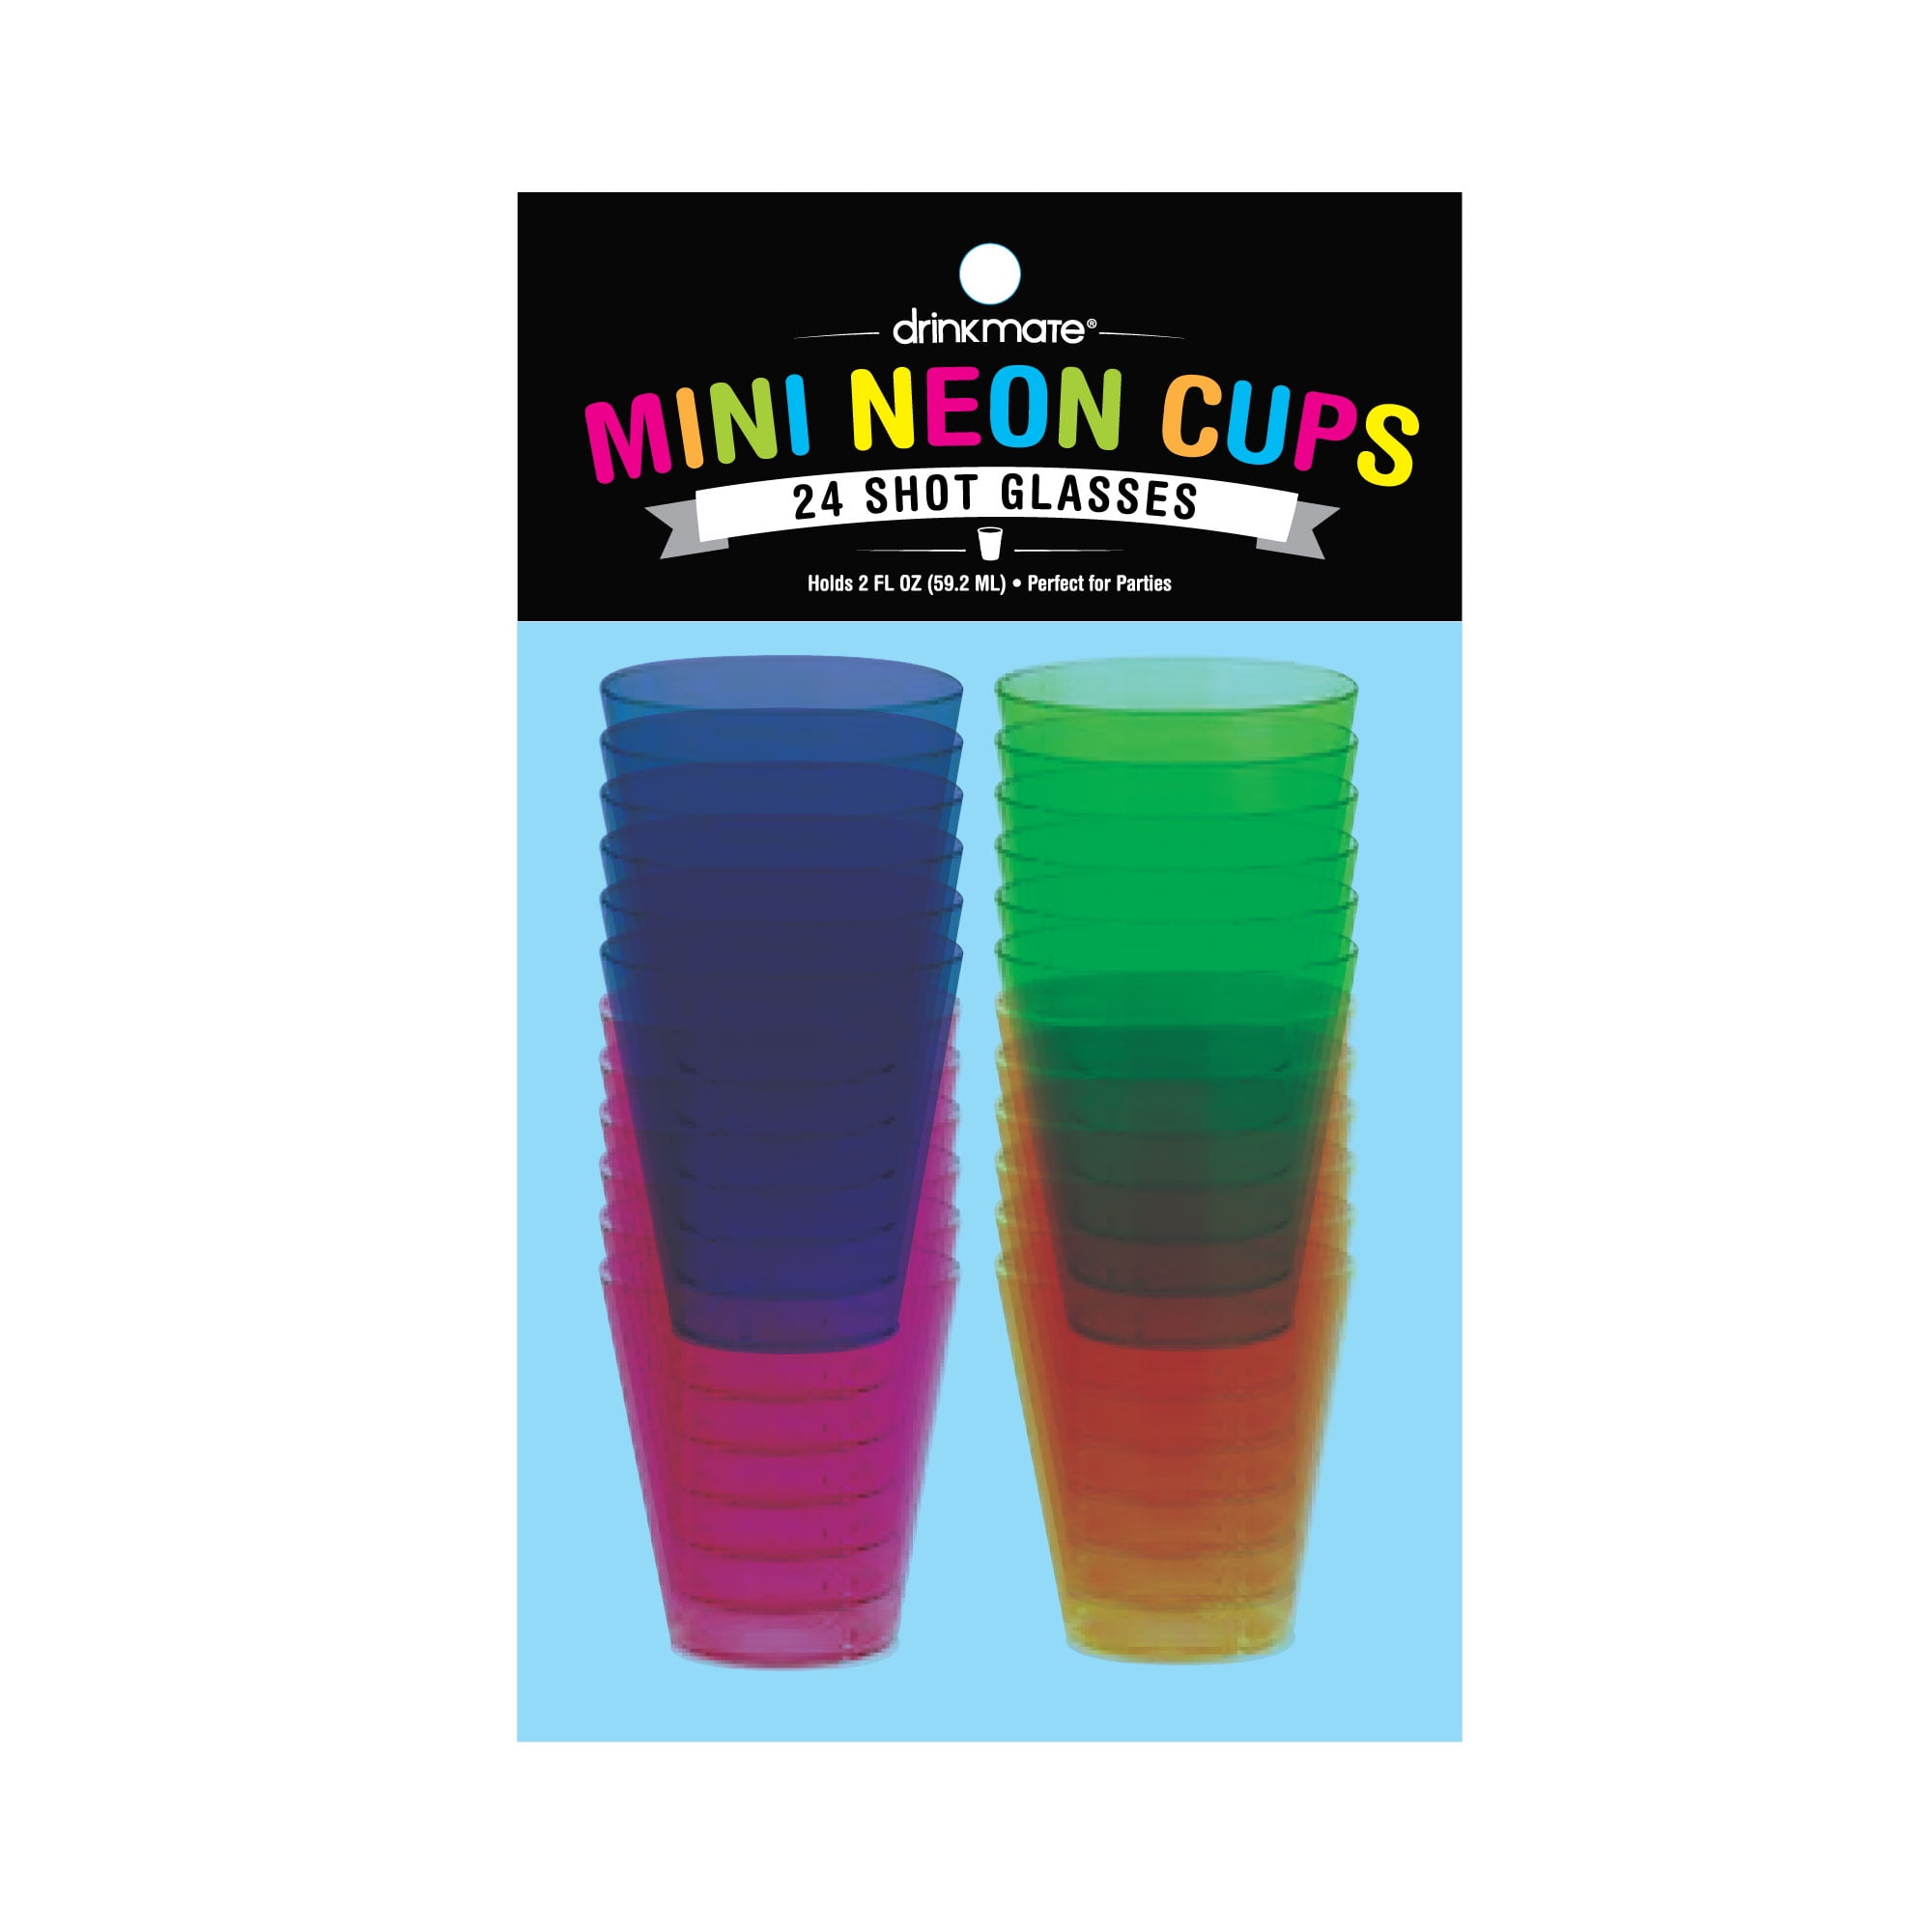 MINI NEON CUPS